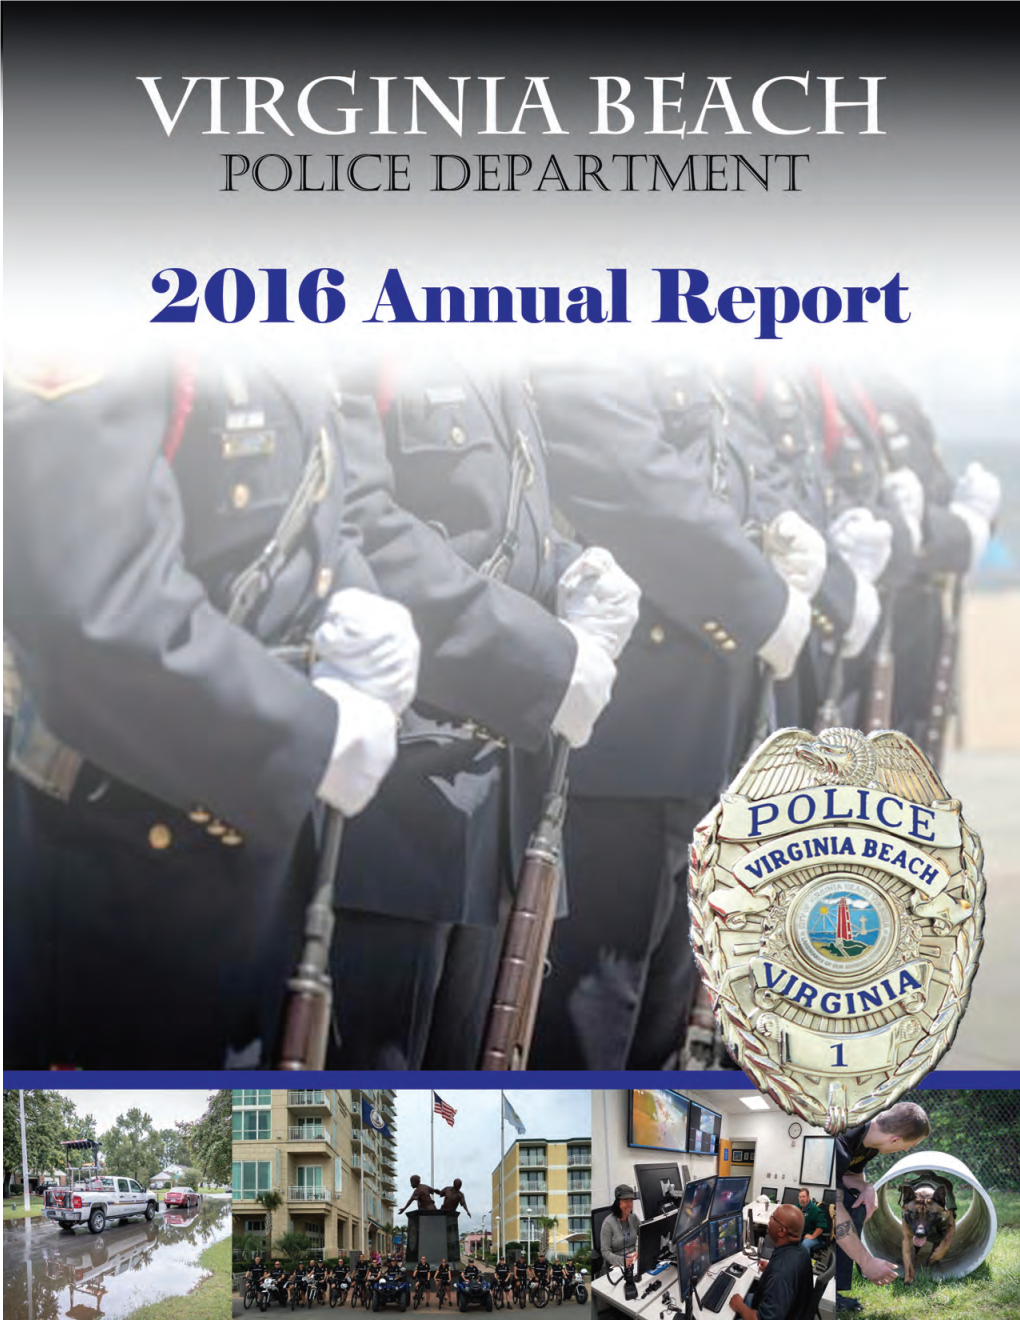 Virginia Beach Police Department 2016 Annual Report 1 Mayor William D